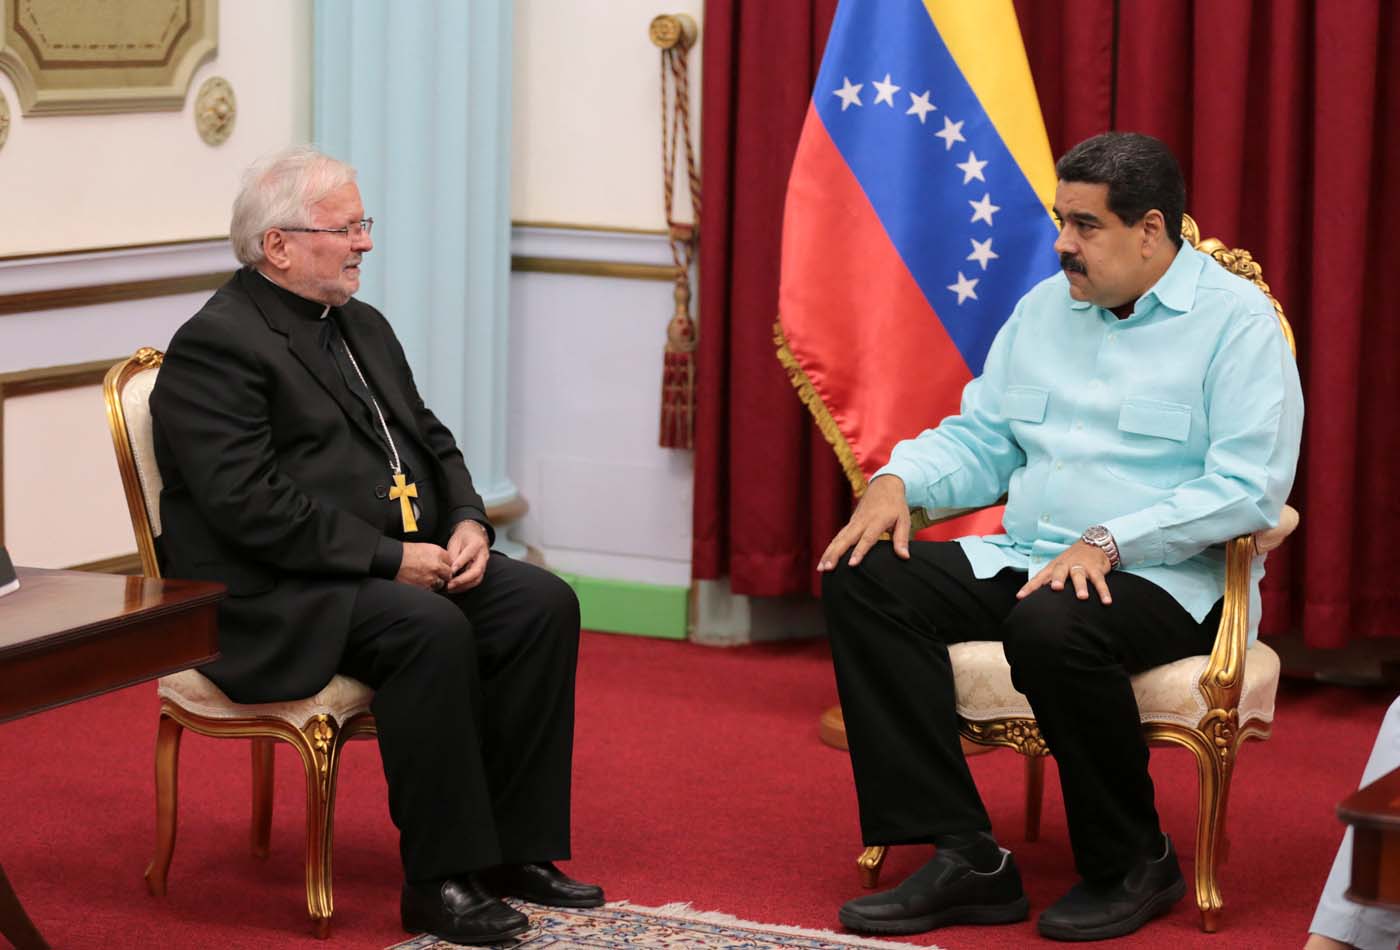 Maduro recibió al Nuncio Apostólico entre críticas de la oposición